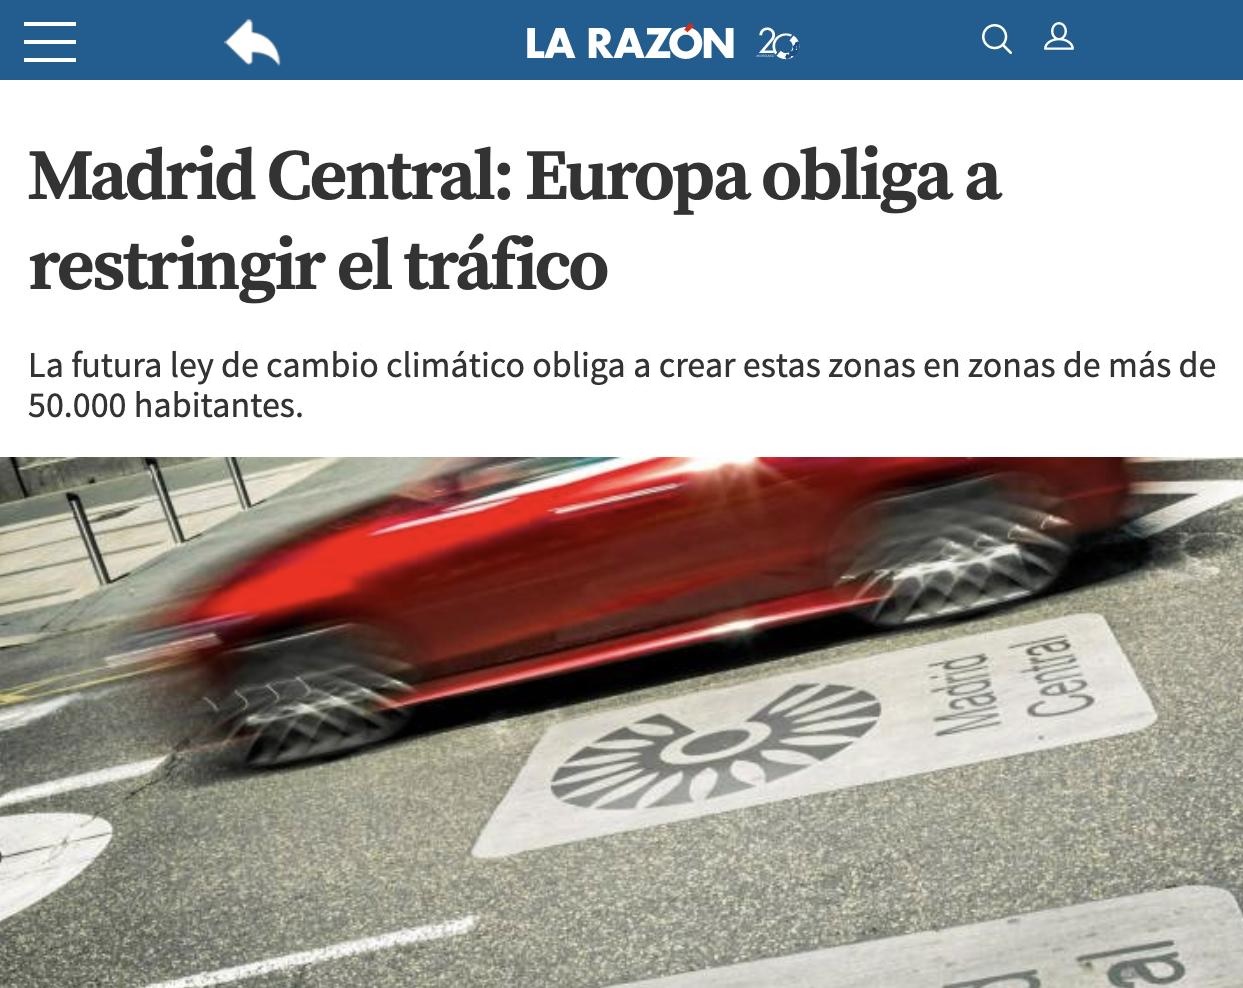 La Razón cuando la izquierda pone en marcha Madrid Central vs La Razón cuando gana la derecha "se da cuenta" de que quitar Madrid Central supone multas millonarias de la UE